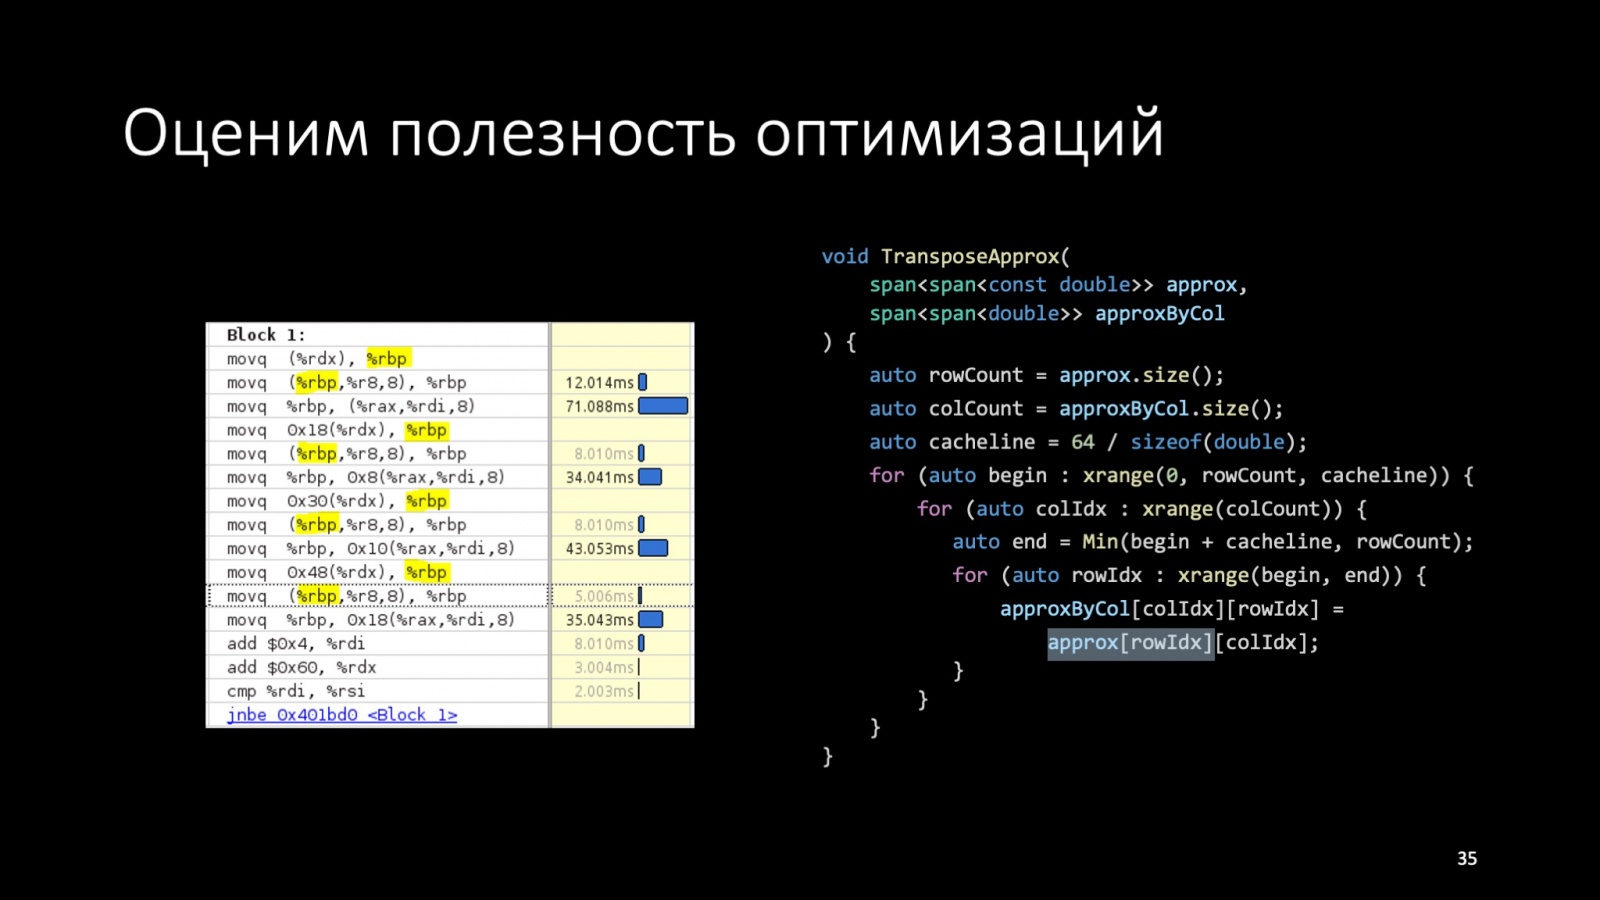 Оптимизация C++: совмещаем скорость и высокий уровень. Доклад Яндекса - 38